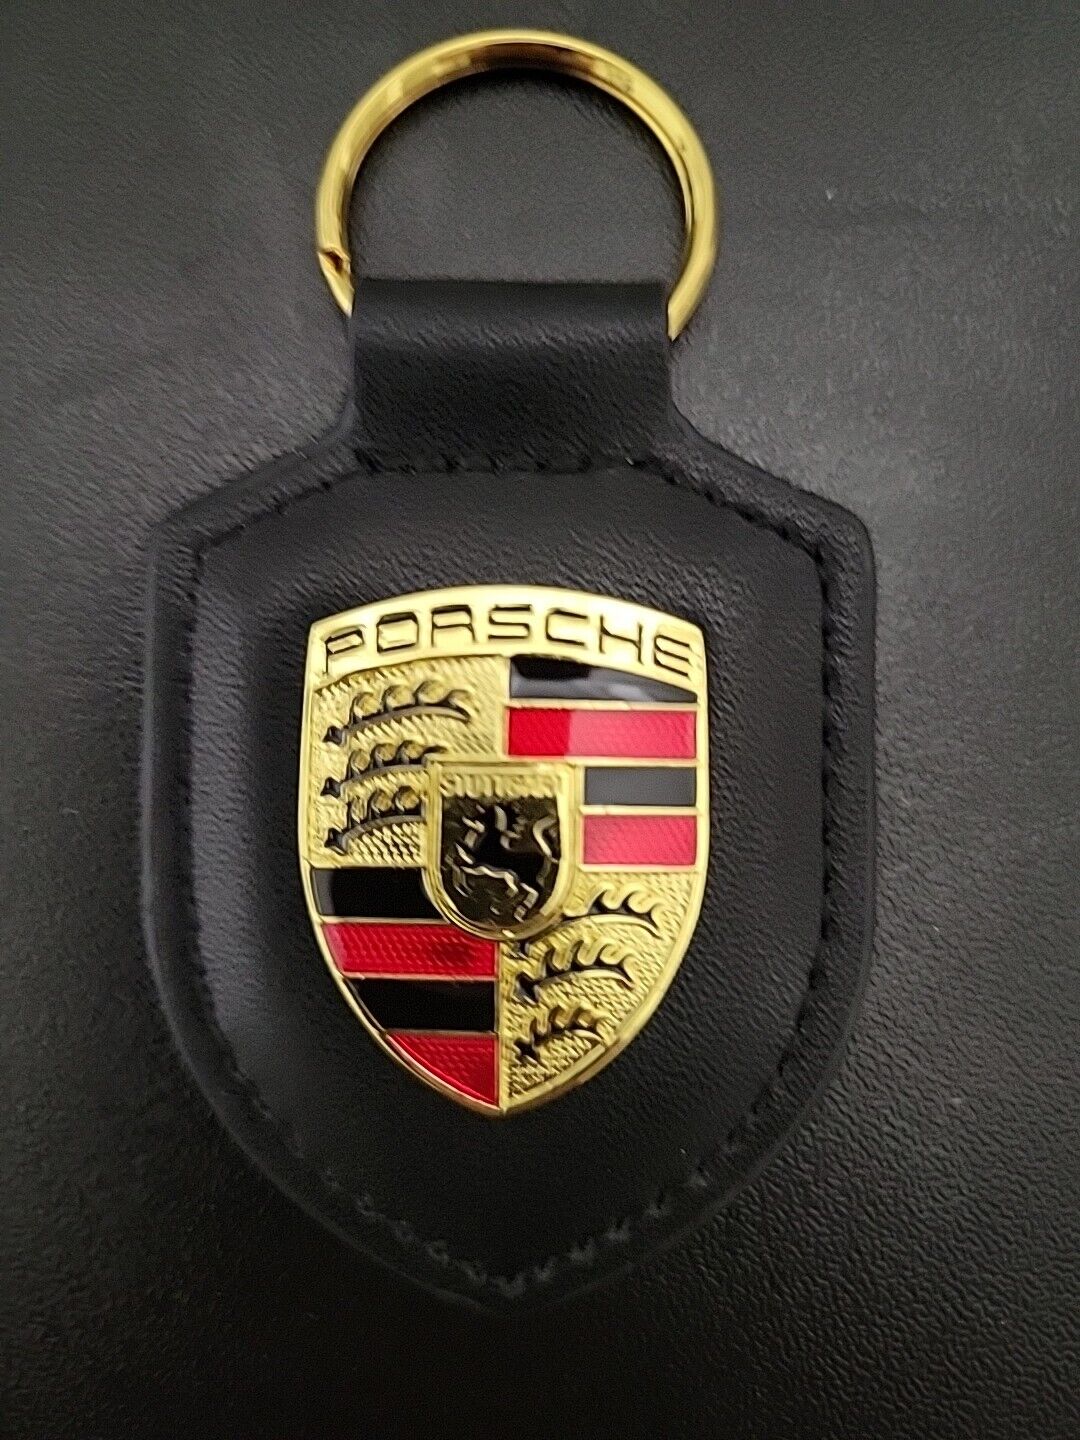 Porsche Crest Key Ring Black 